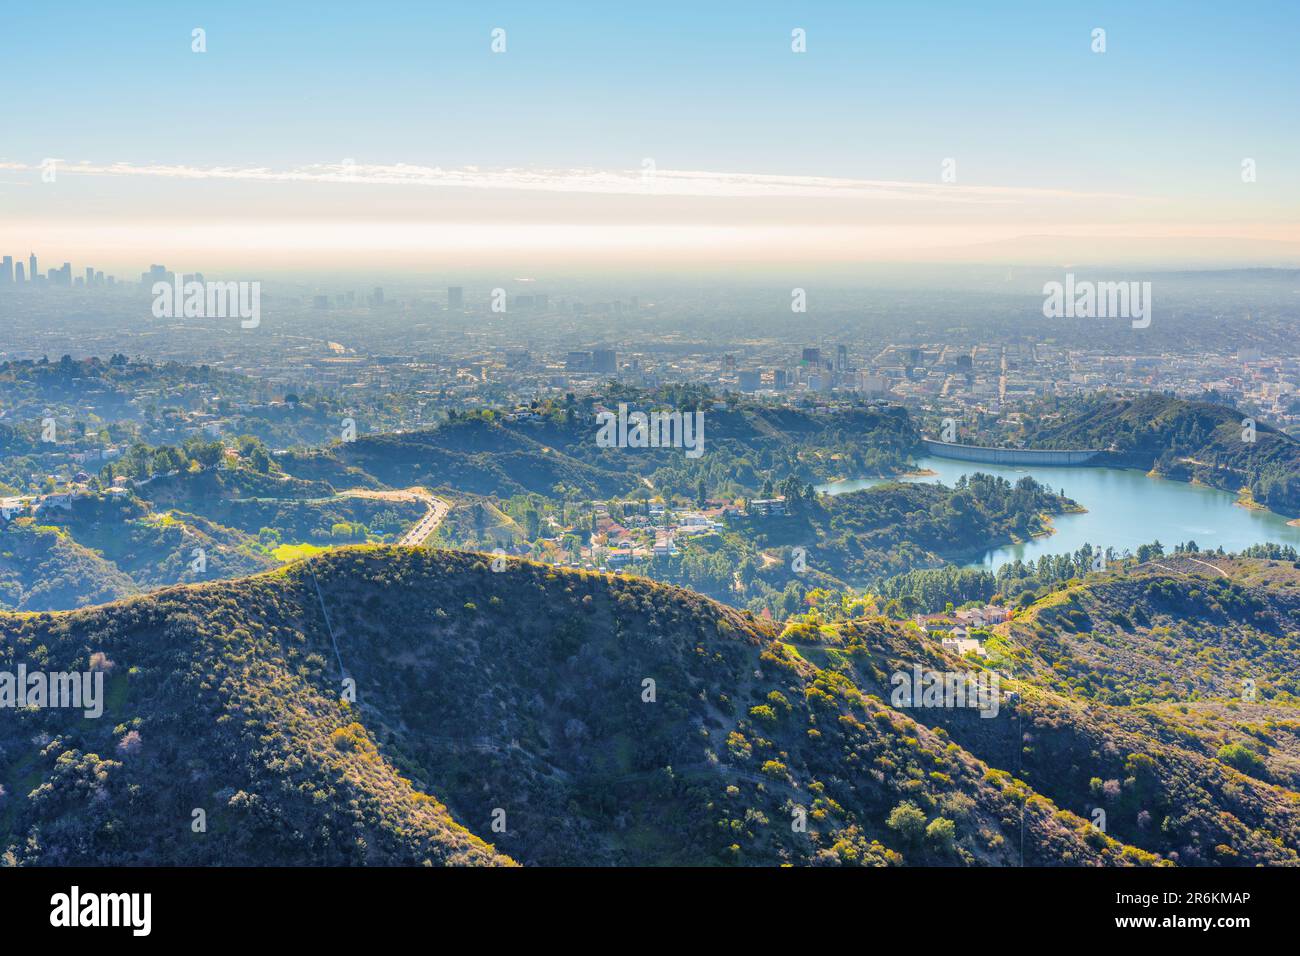 Lake Hollywood, Hollywood Hills und die Stadt Los Angeles von einem Hügel aus gesehen. Reise- und Naturthemen im Hintergrund. Stockfoto